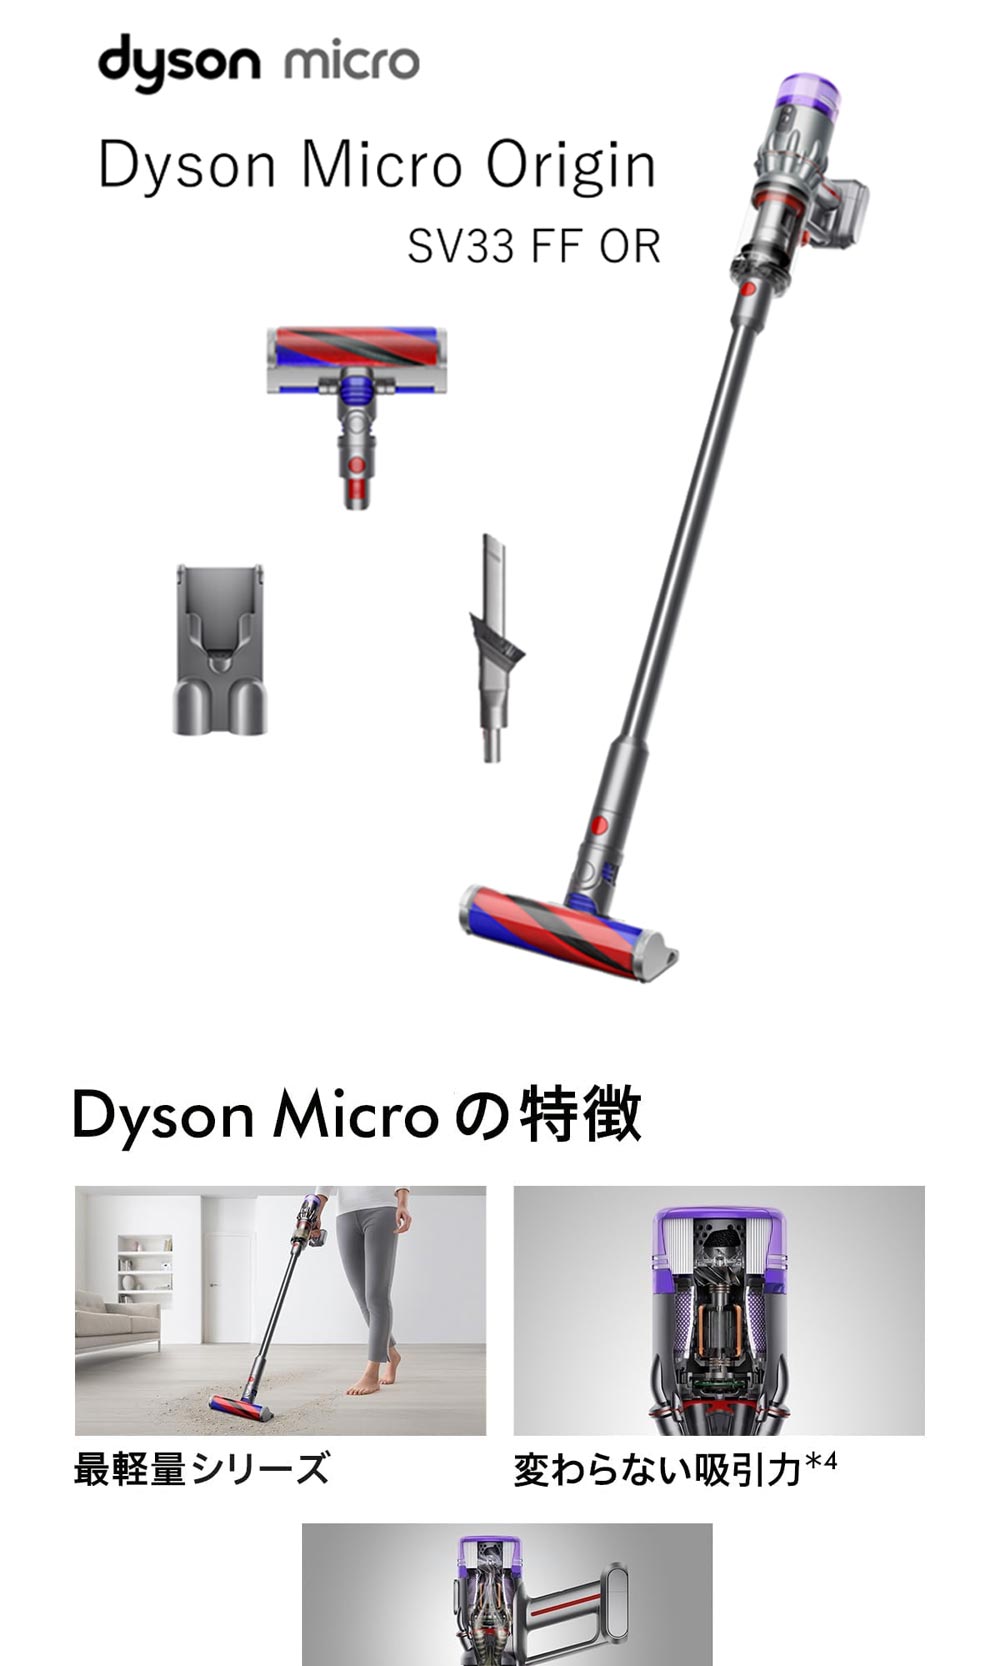 ダイソン 掃除機 スティッククリーナー Dyson Micro Origin SV33 FF OR